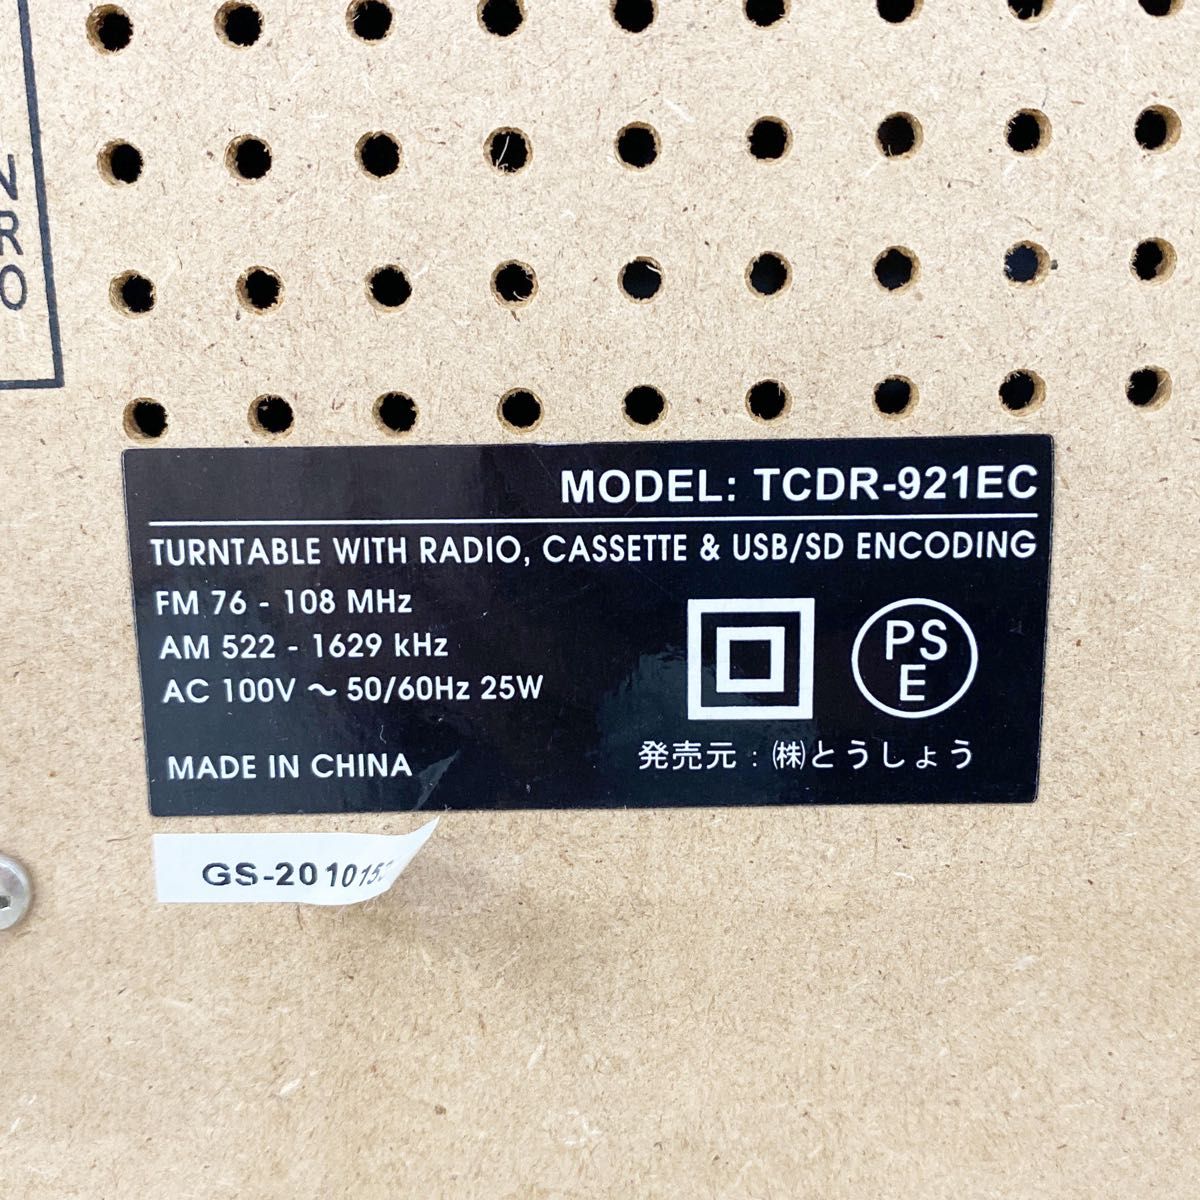 【美品】TCDR-921EC イコライザー機能付きマルチレコードプレーヤー